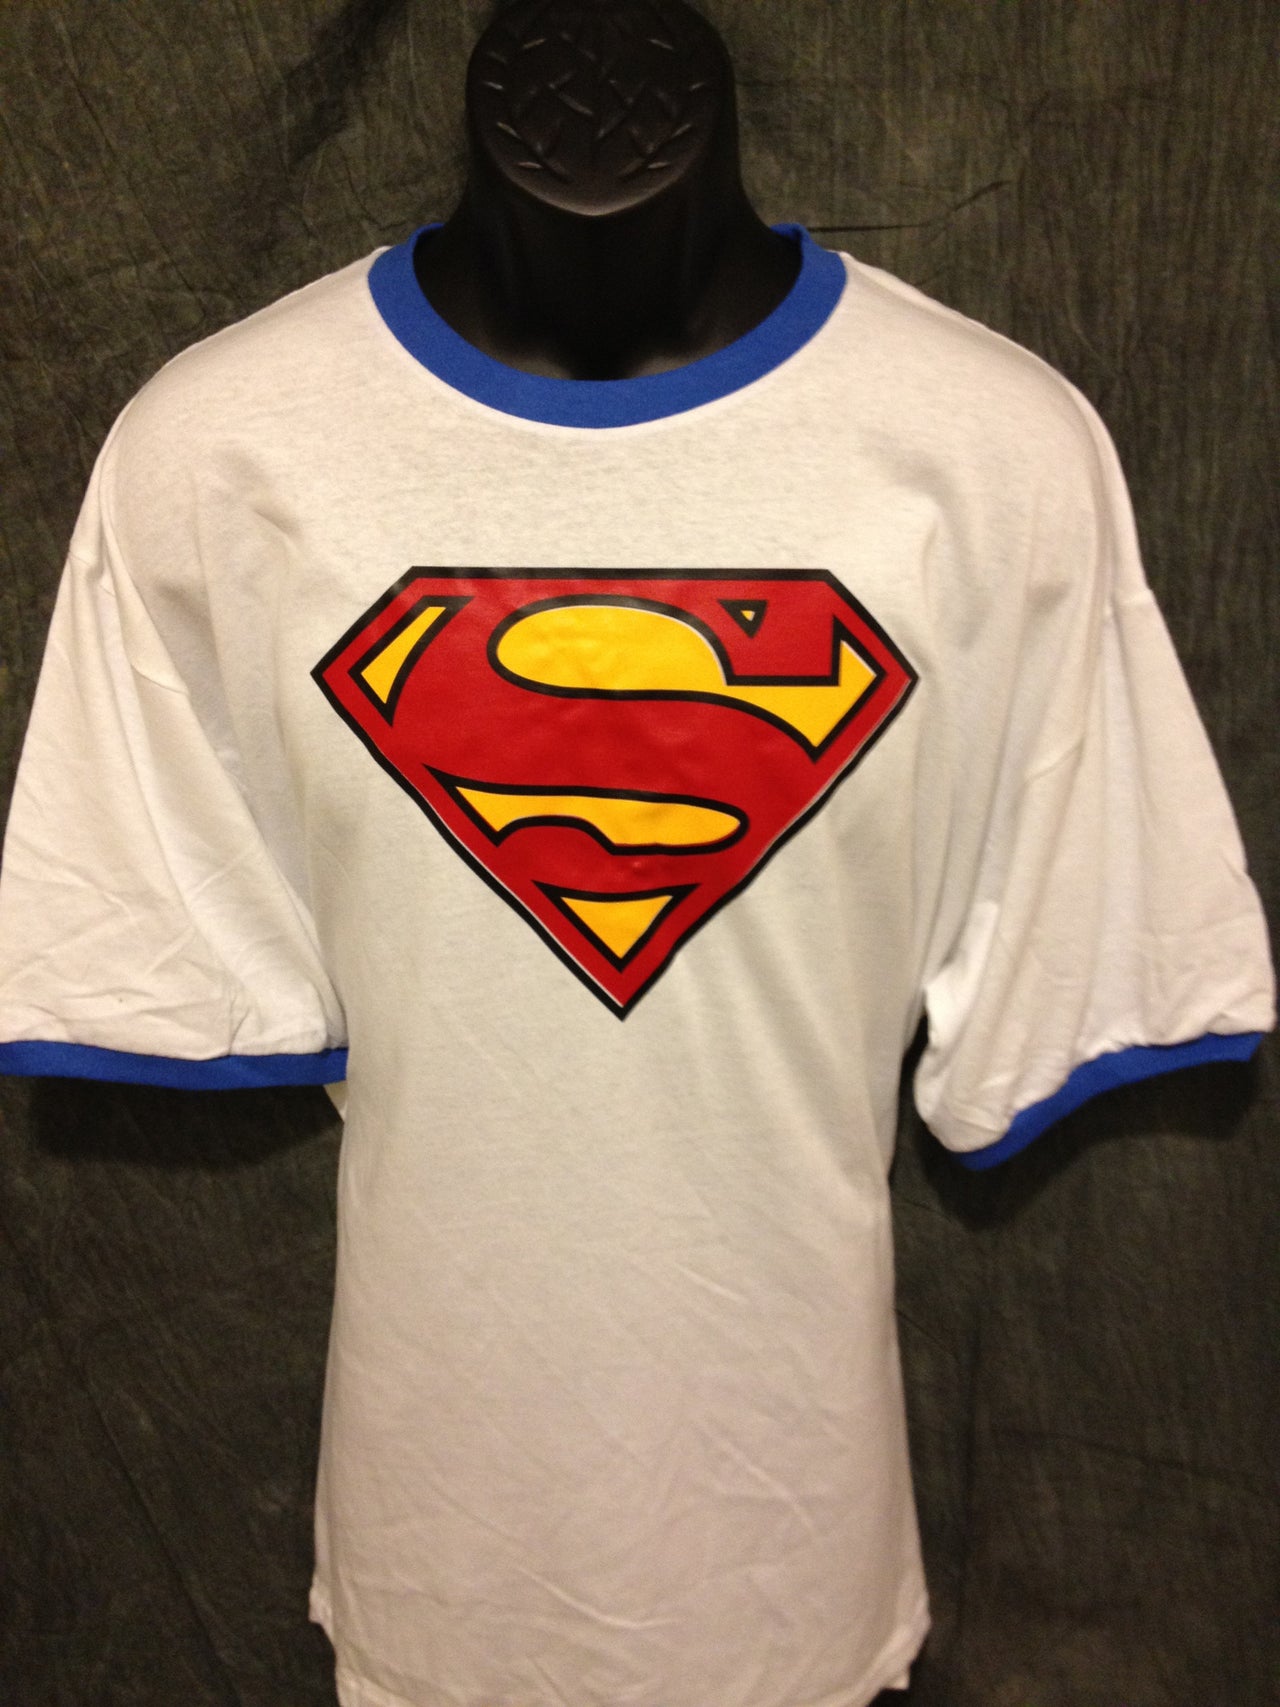 Superman Classic Logo on Blue Ringer Tshirt - TshirtNow.net - 2